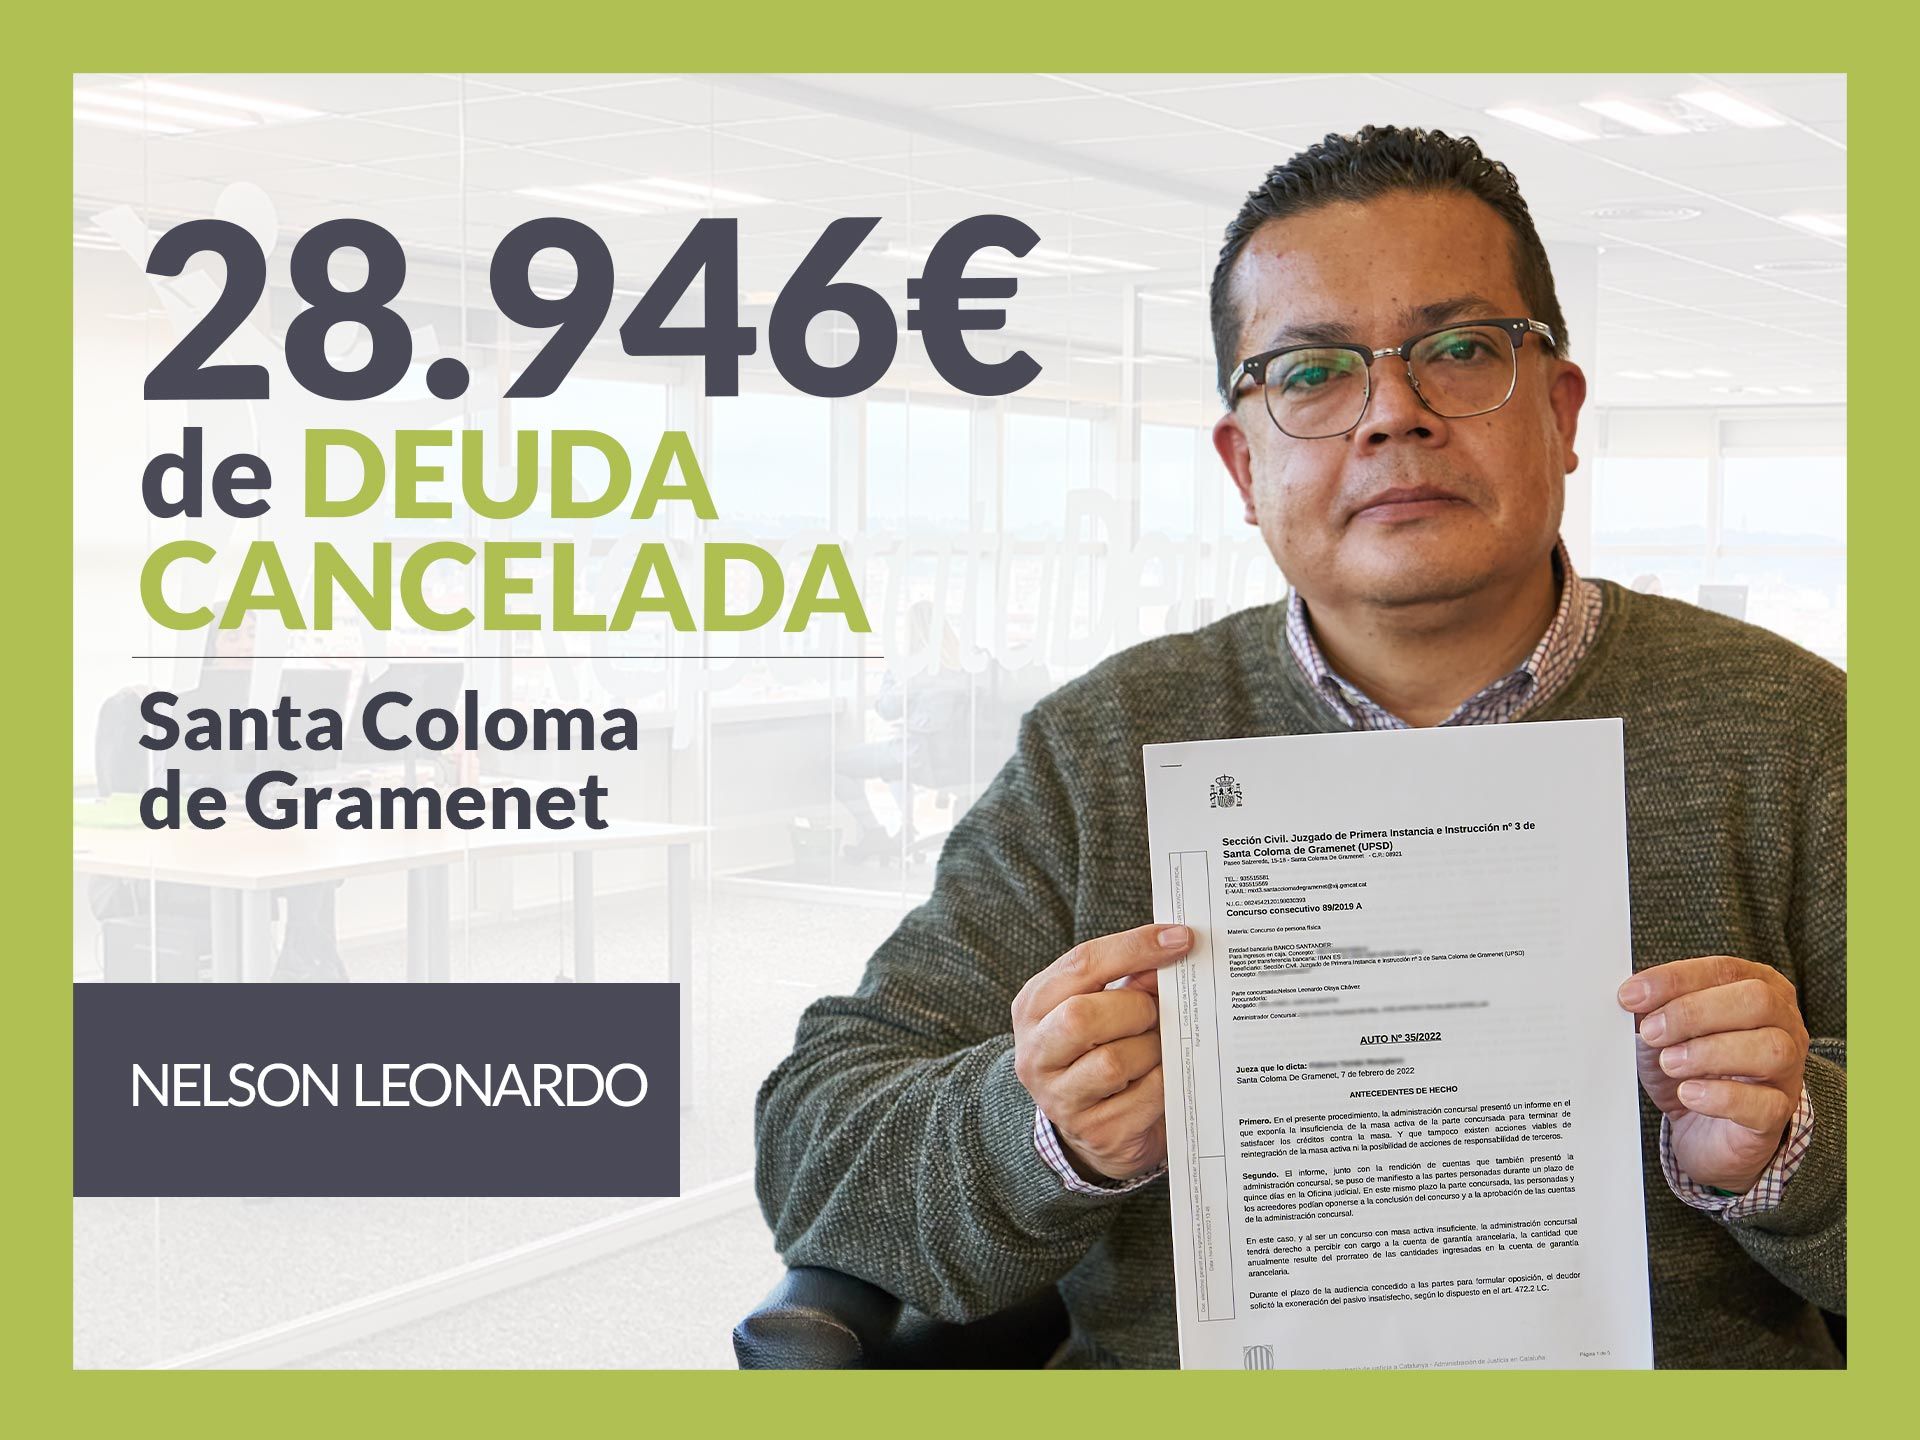 Repara tu Deuda cancela 28.946? en Santa Coloma de Gramenet (Barcelona) con la Ley de Segunda Oportunidad